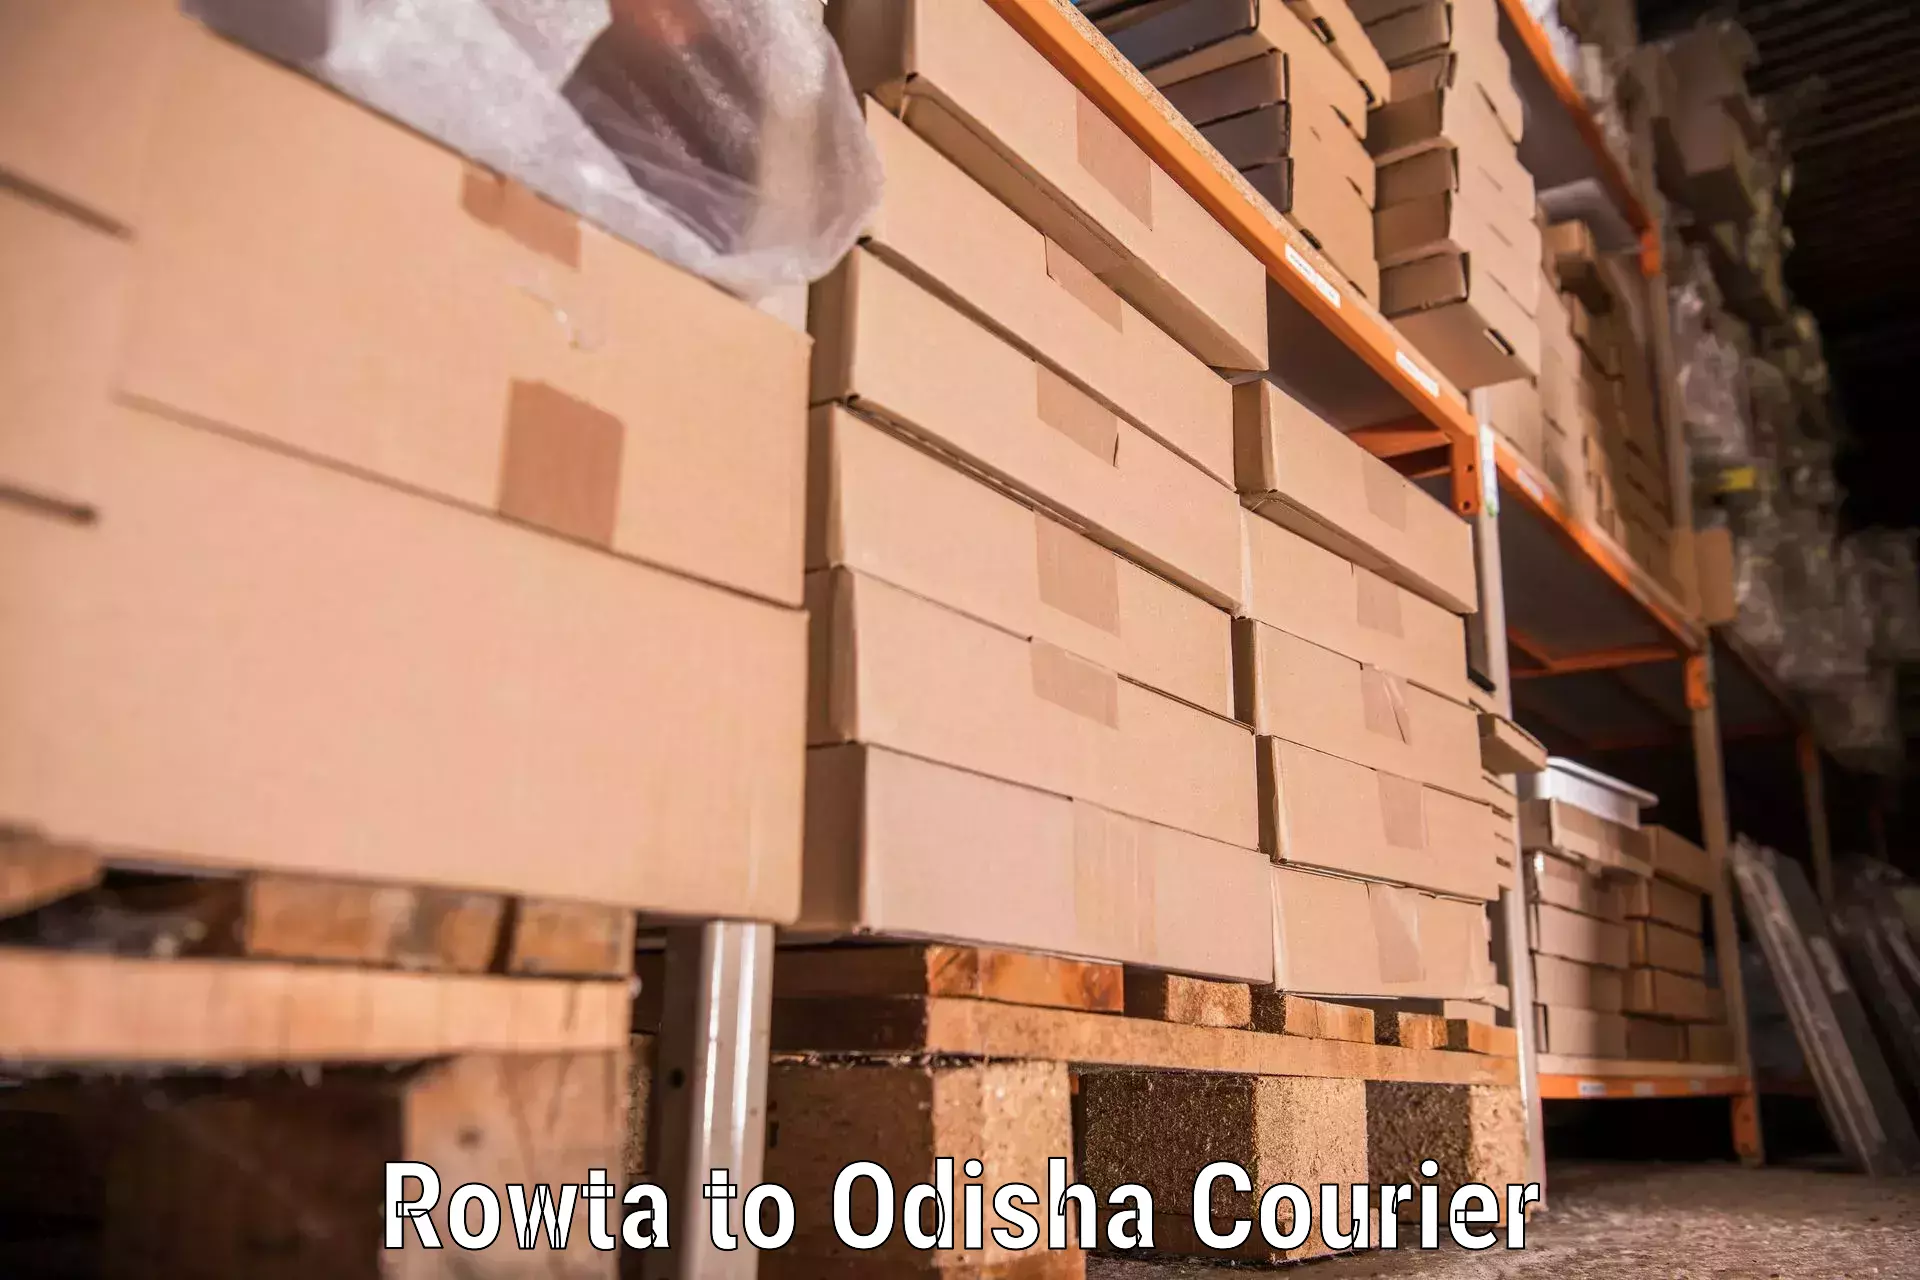 Efficient moving company Rowta to Telkoi